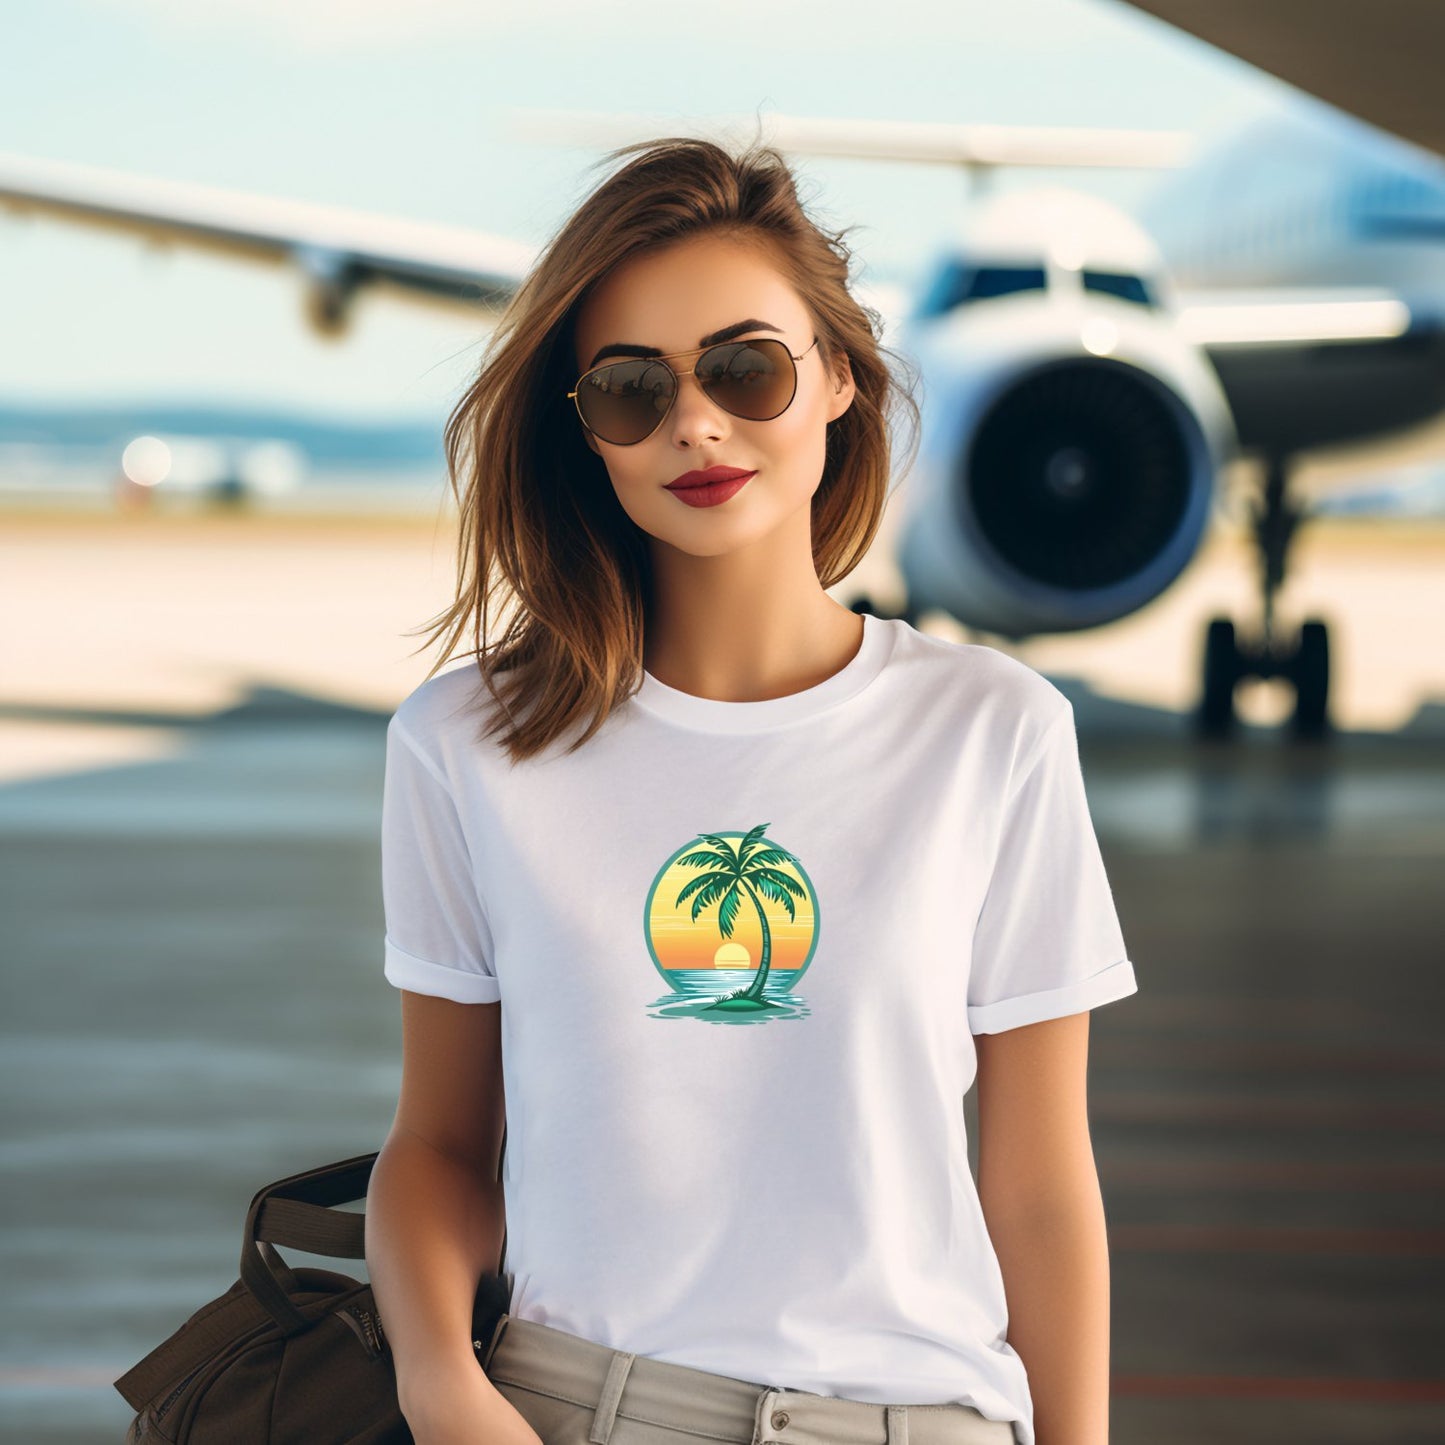 Moteriški marškinėliai "Under a Palm" su palmės atvaizdu, skirti laisvalaikio akimirkoms paplūdimyje ar mieste. Modelis su saulėlydžio užsklanda, puikiai tinka ramybę ir estetiką vertinančioms moterims. Pagaminta Designedbyme.lt, moteriški marškinėliai su užrašais ir spauda, idealiai tinka kaip dovana draugei ar ypatinga gimtadienio dovana. Užsukite į mūsų internetinę parduotuvę ir atraskite daugiau, Moteriški marškinėliai,Visi produktai,☀️ Vasaros kolekcija ☀️